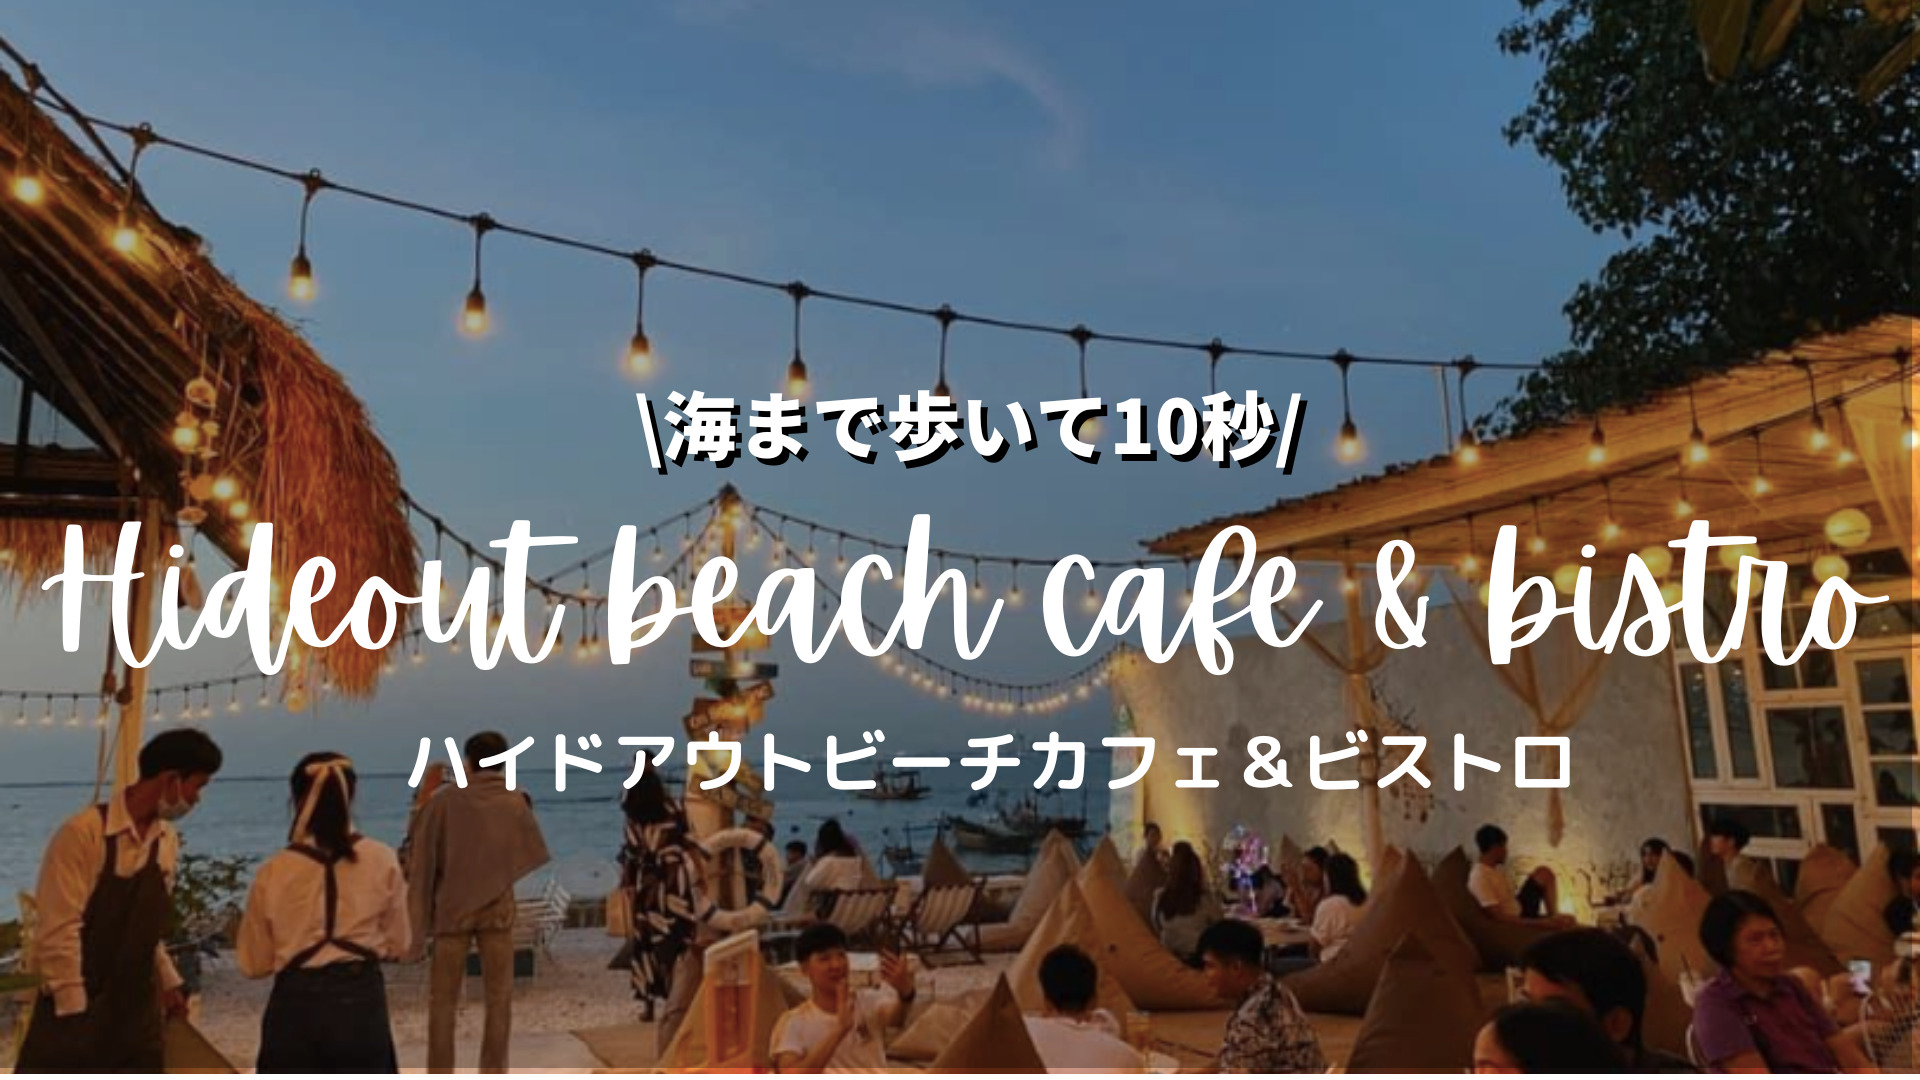 海まで歩いて10秒⁉︎シラチャのおすすめカフェ レストラン ハイドアウトビーチ(Hideout beach cafe & bistro)